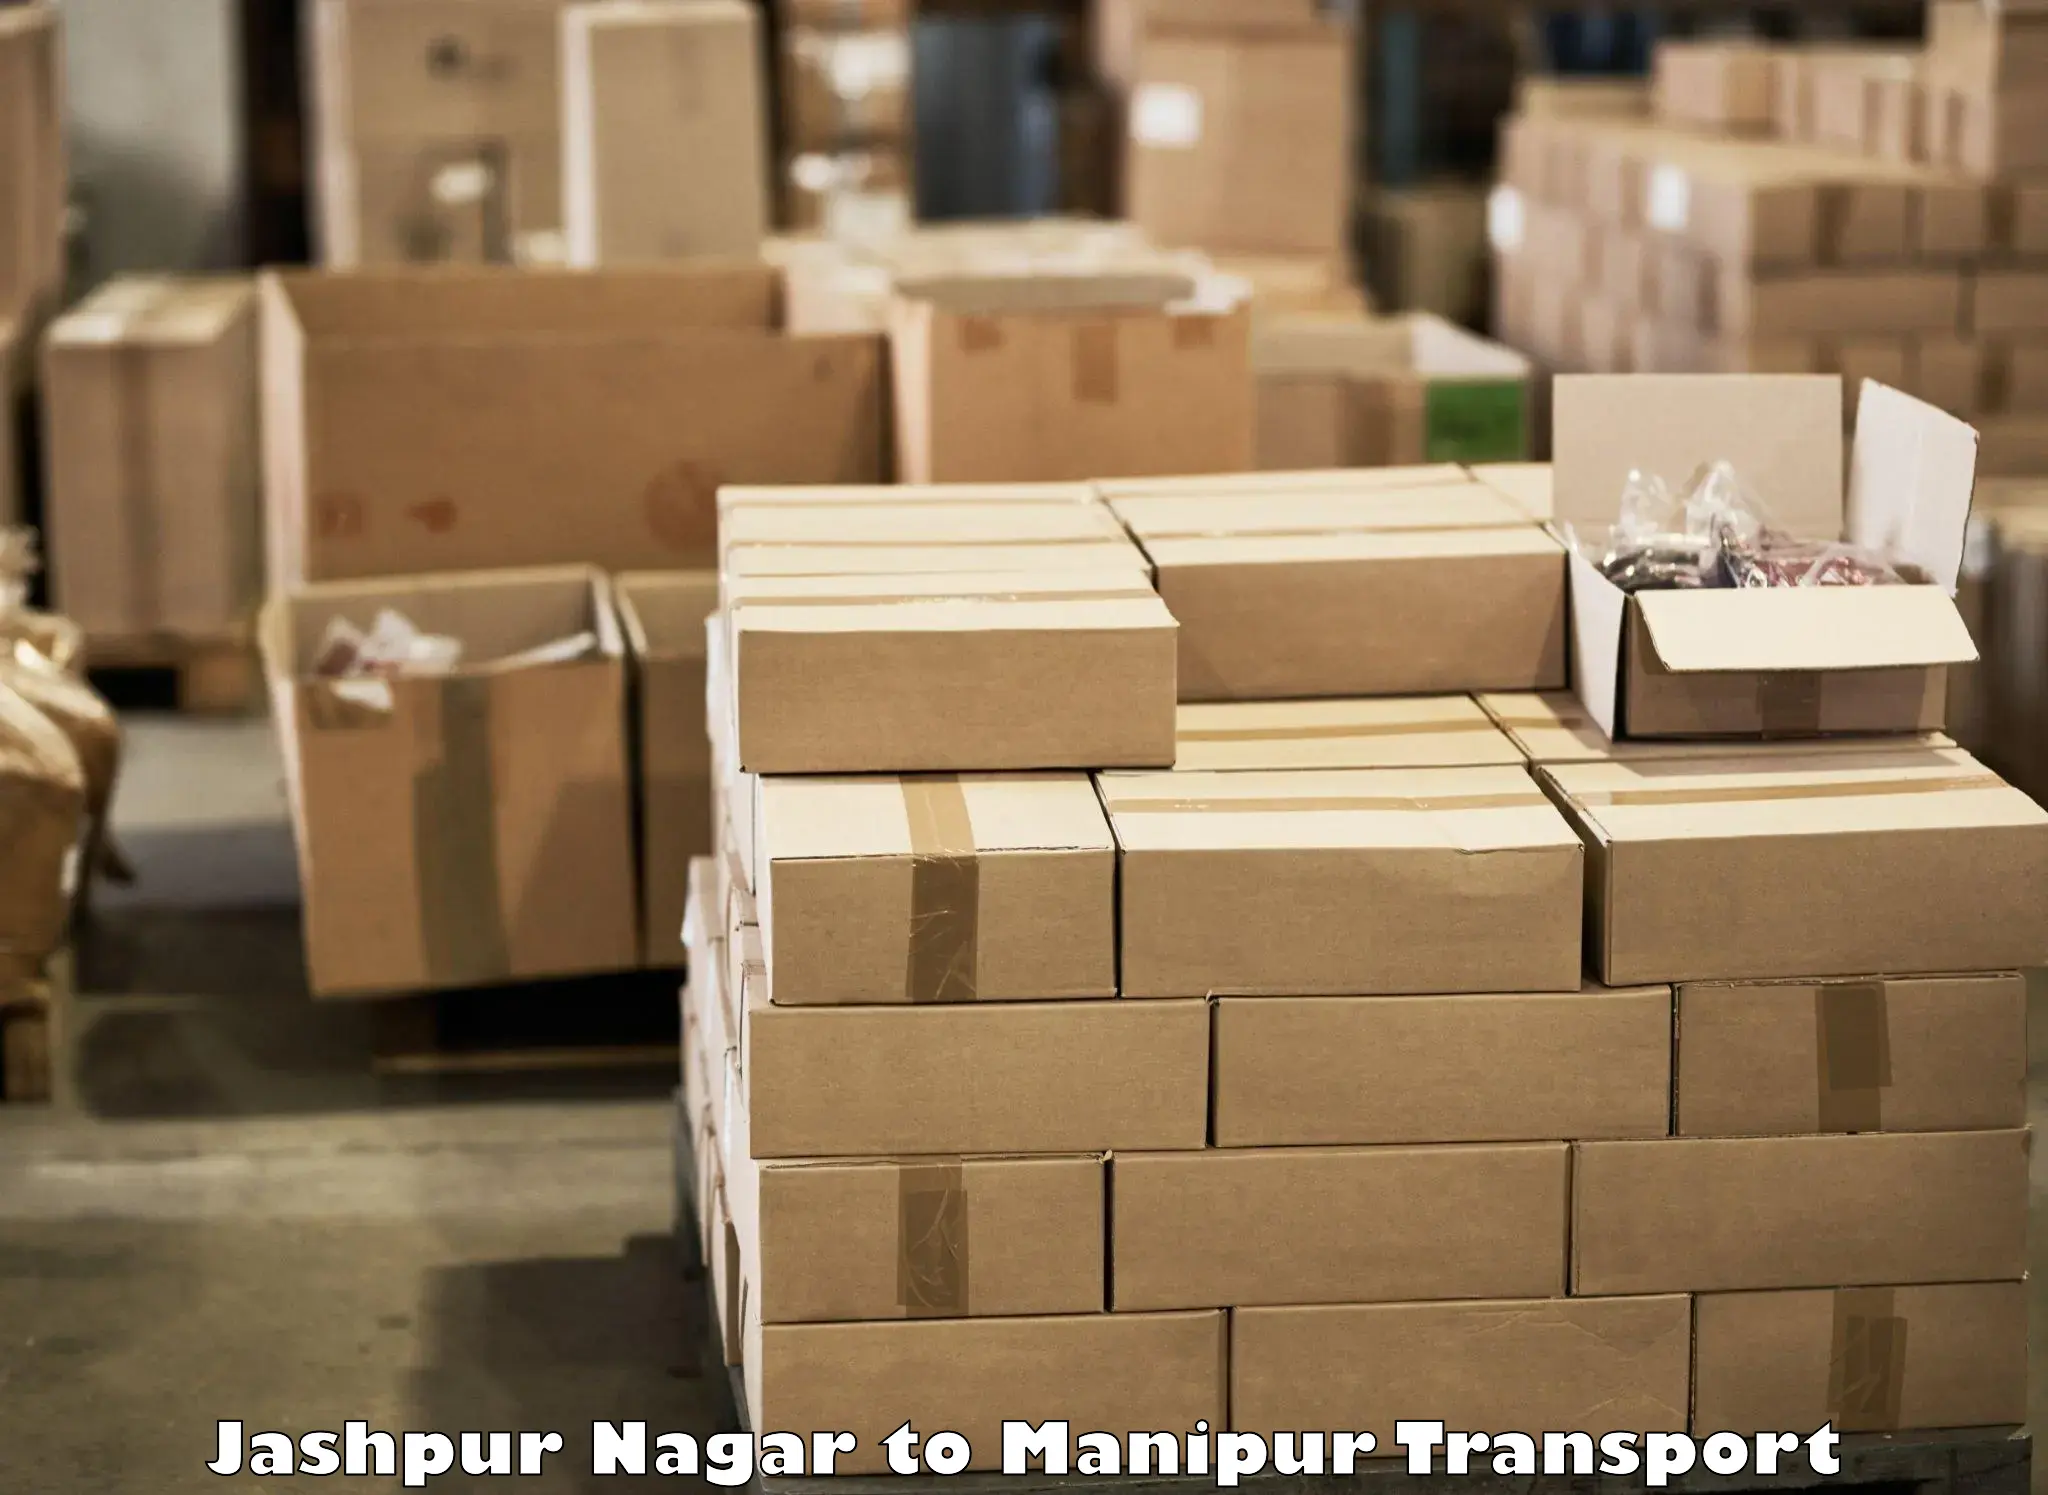 Container transport service in Jashpur Nagar to Churachandpur